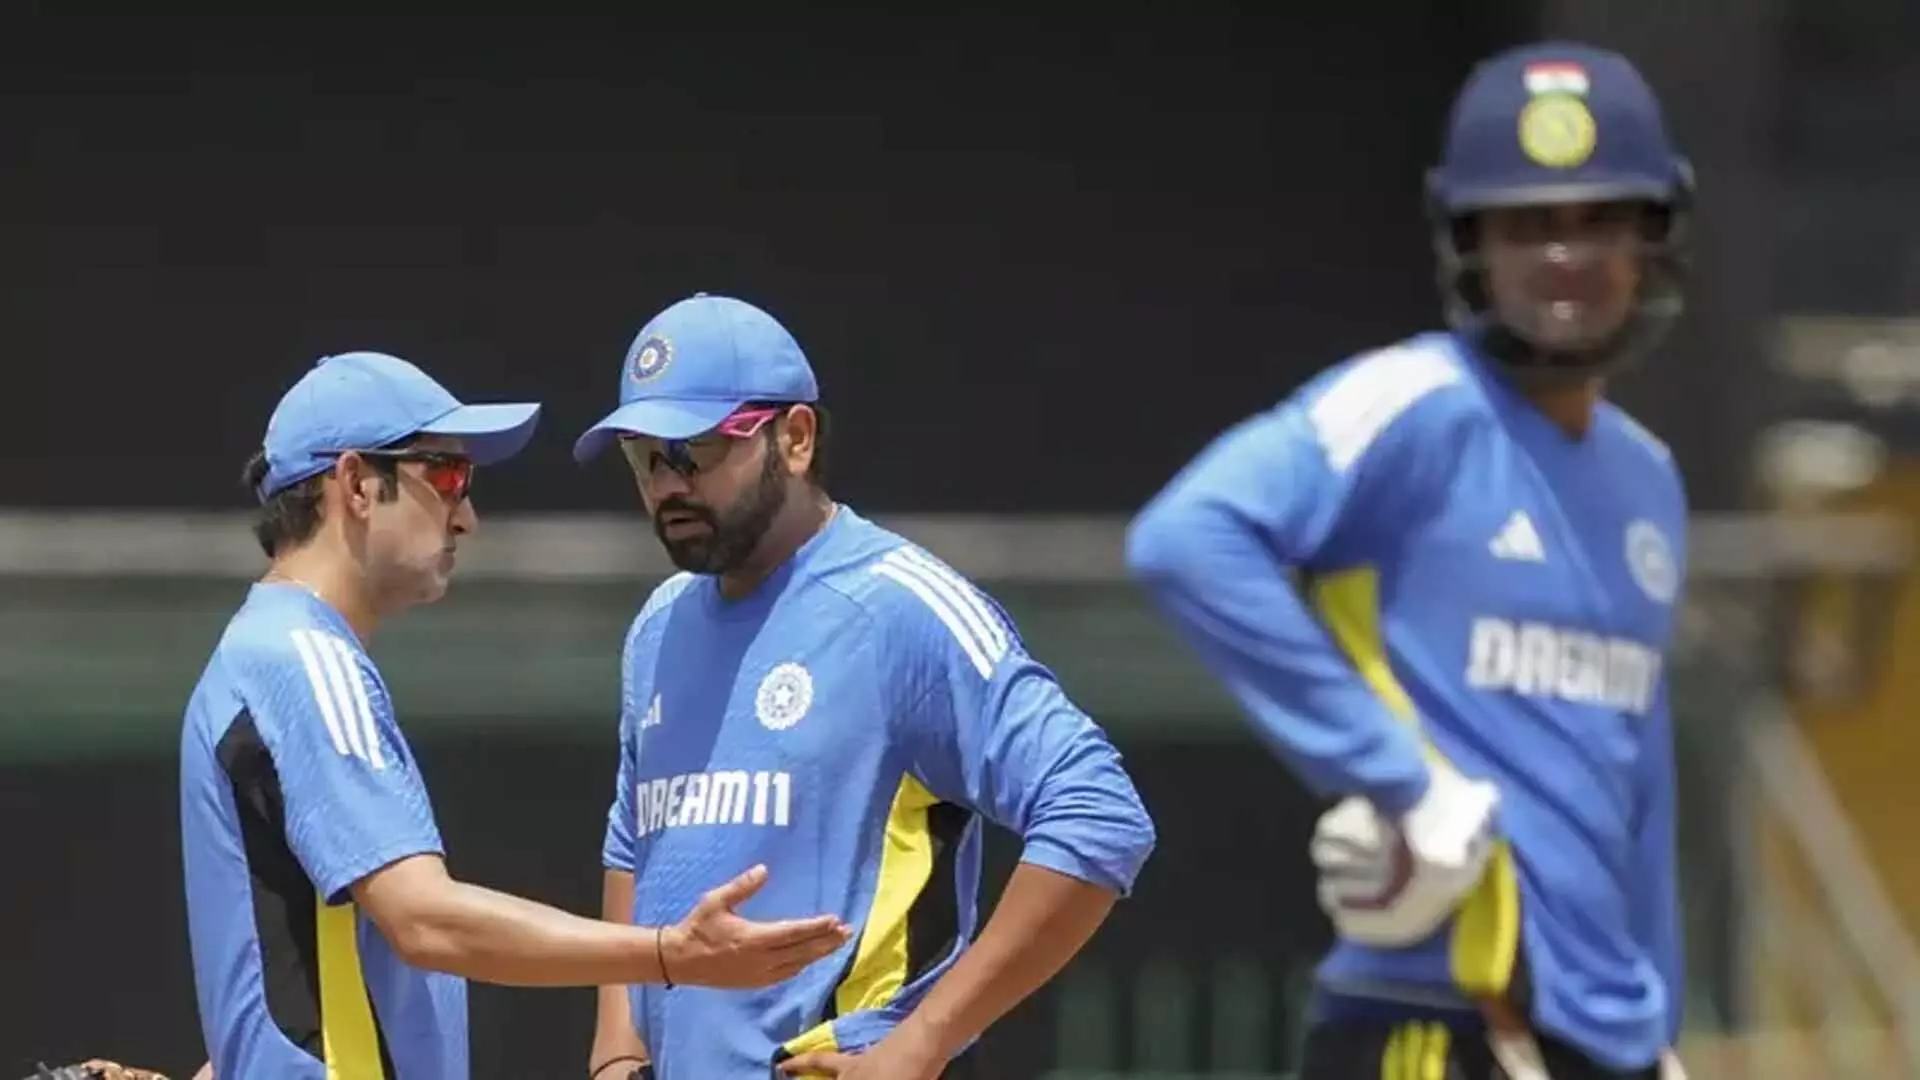 Indian coach ने माना कि श्रीलंका के खिलाफ हार चौंकाने वाली